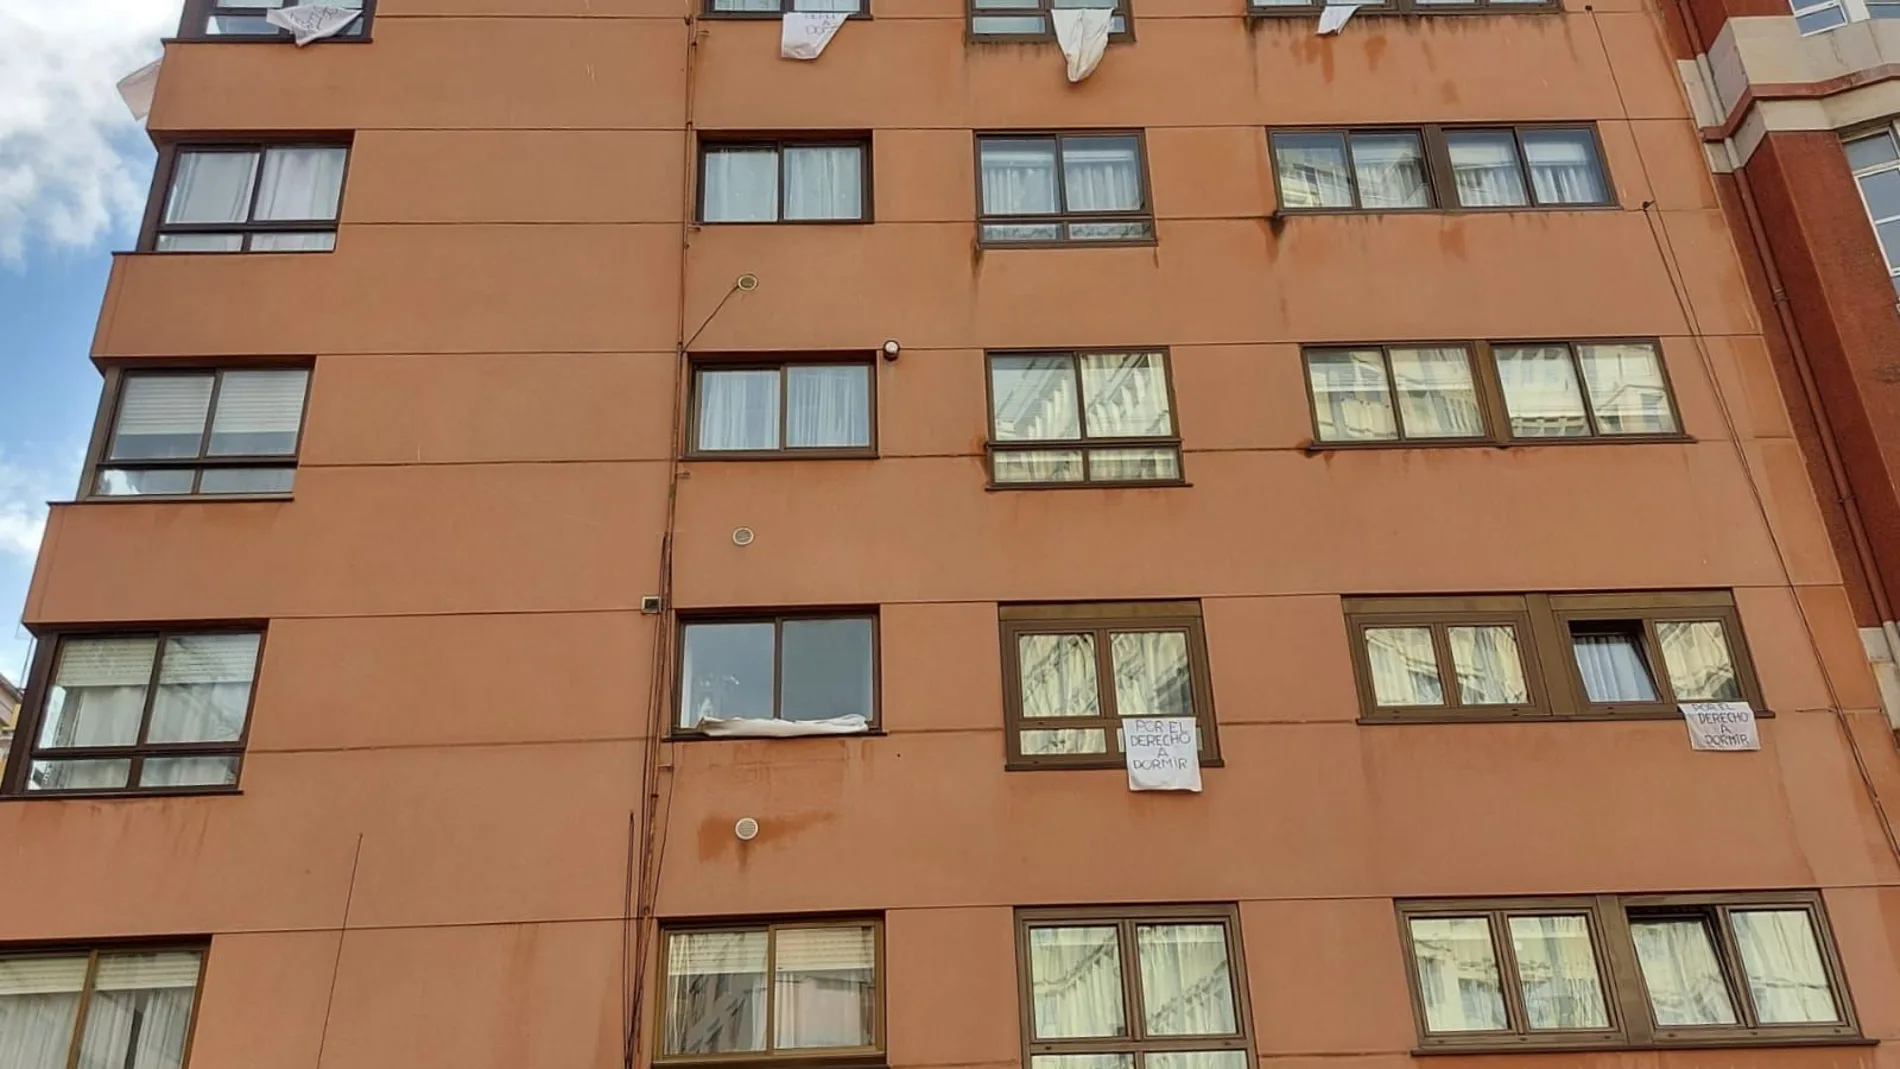 Los vecinos del barrio de Orzán sacan sus sábanas a la ventana en protesta por los ruidos nocturnos